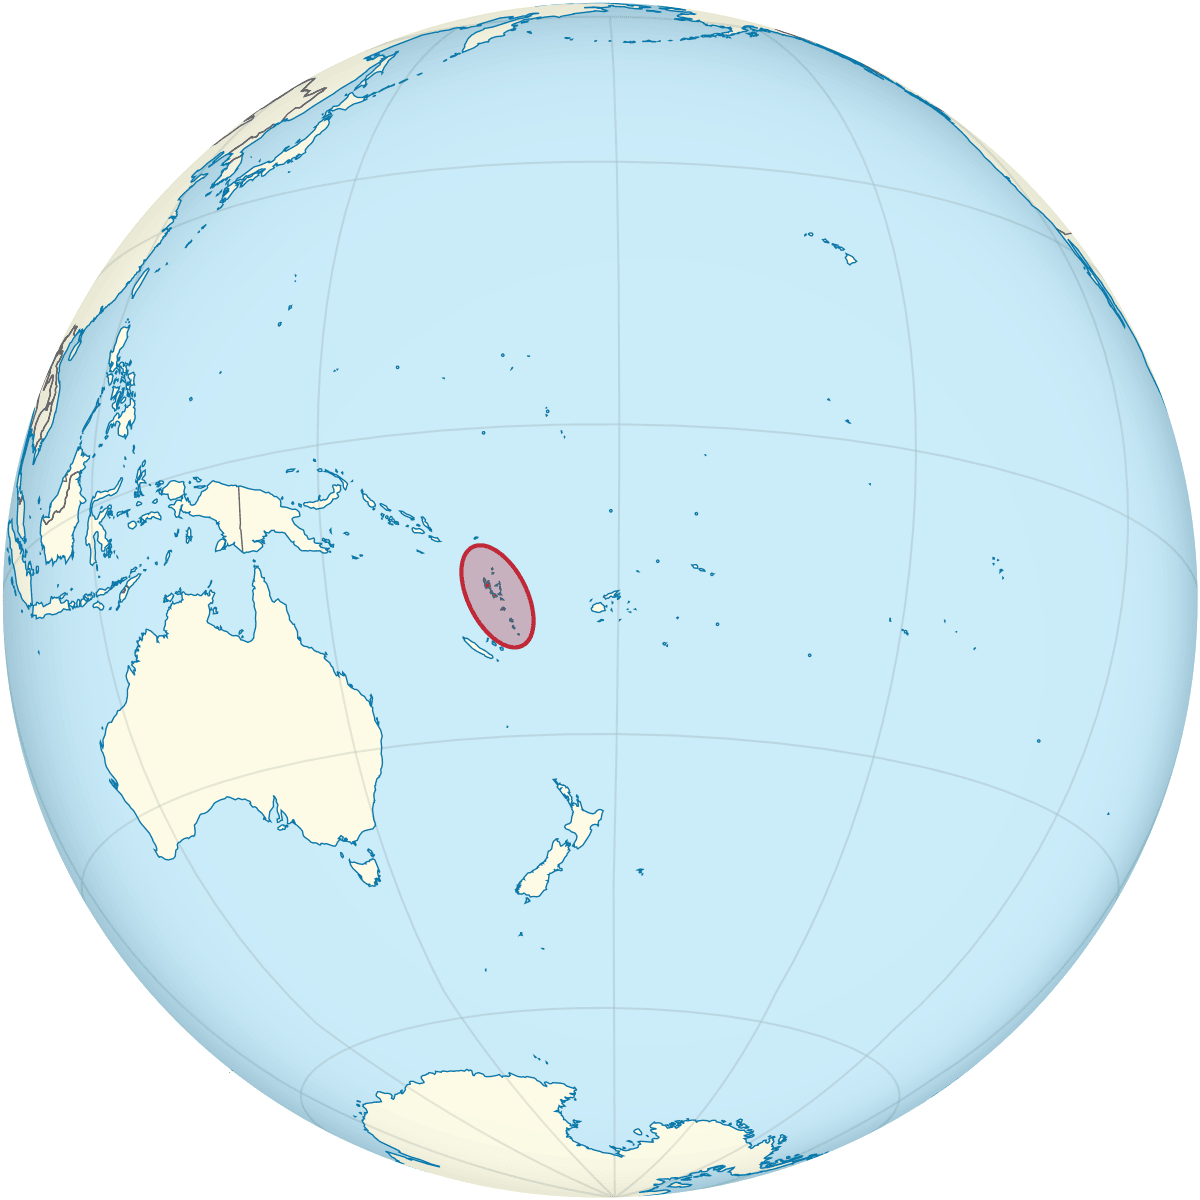 Vanuatu shown on a globe map